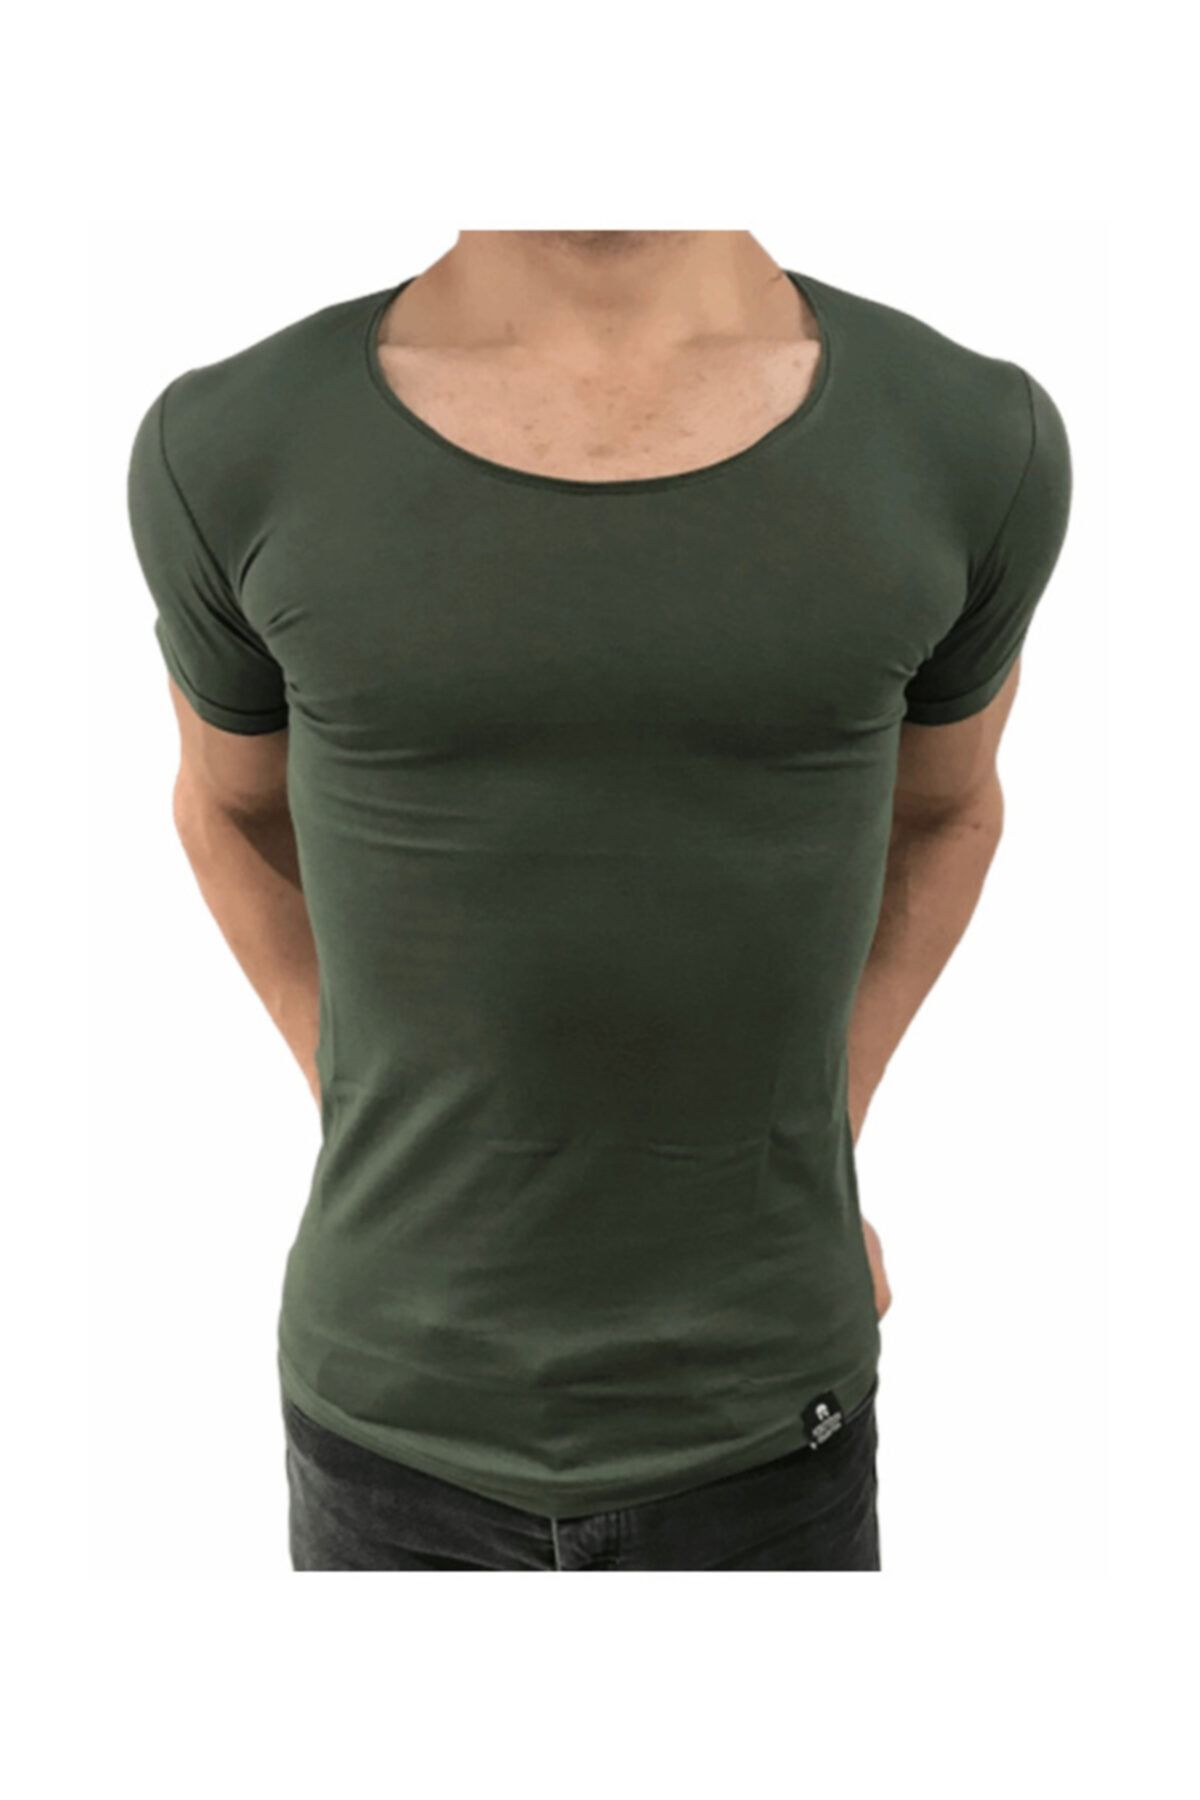 BYBÜLENT Erkek Oval Yaka Tişört Açık Yaka Likralı Slim Fit T-shirt Haki Vr111